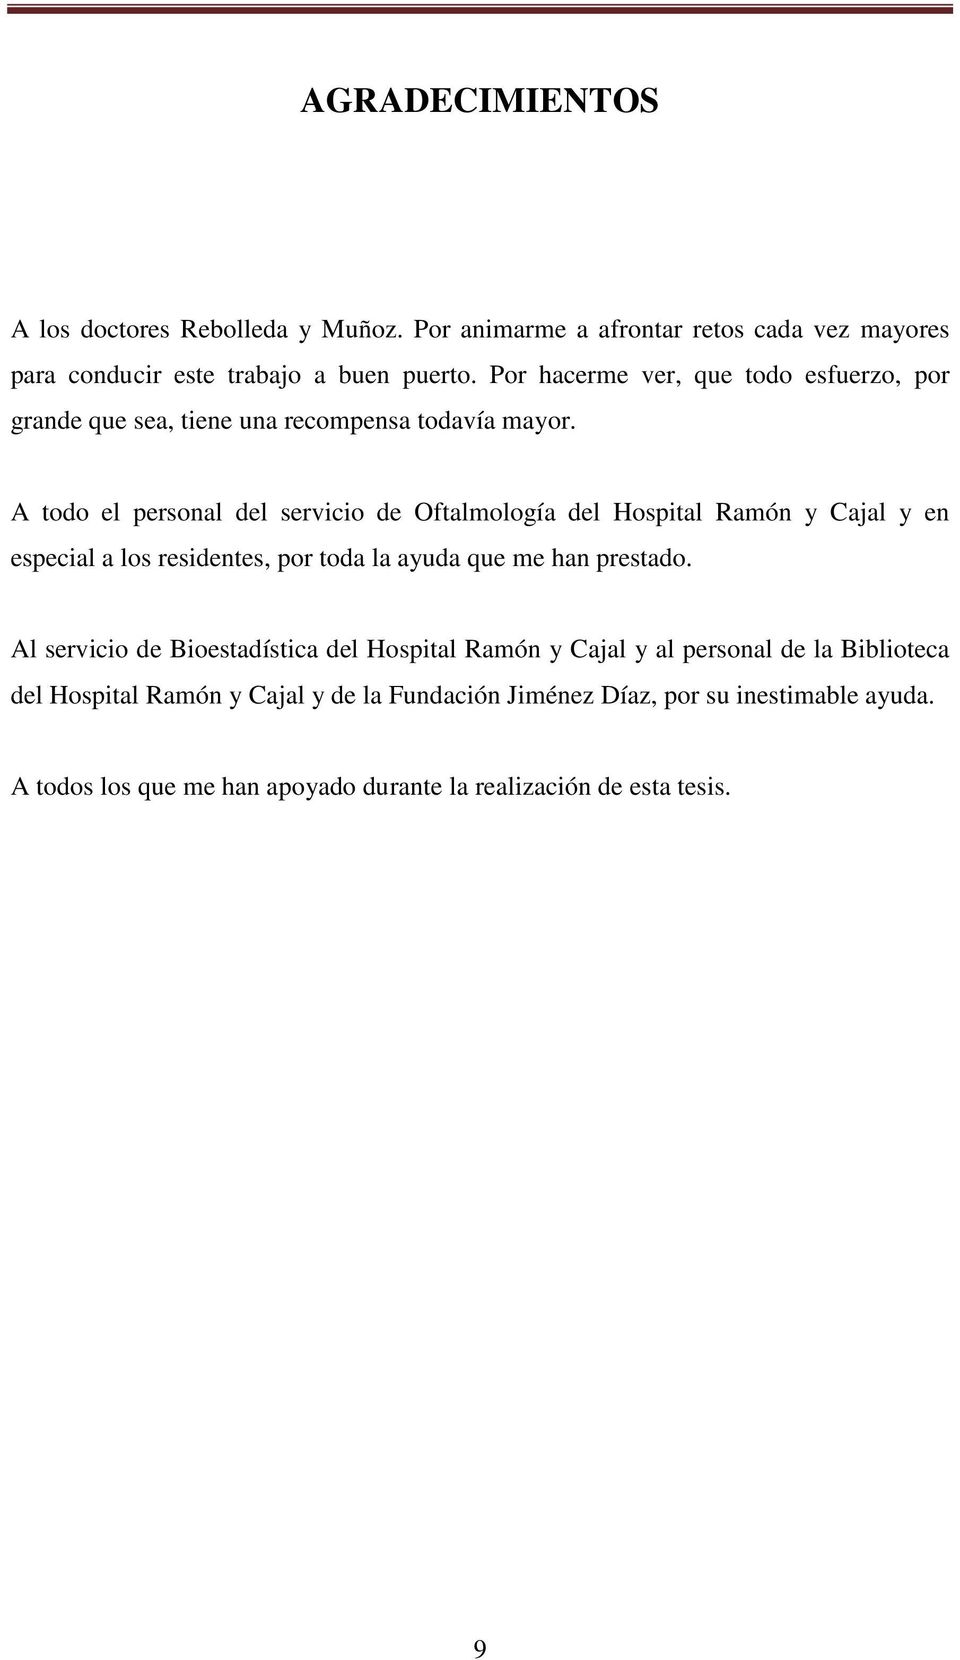 A todo el personal del servicio de Oftalmología del Hospital Ramón y Cajal y en especial a los residentes, por toda la ayuda que me han prestado.